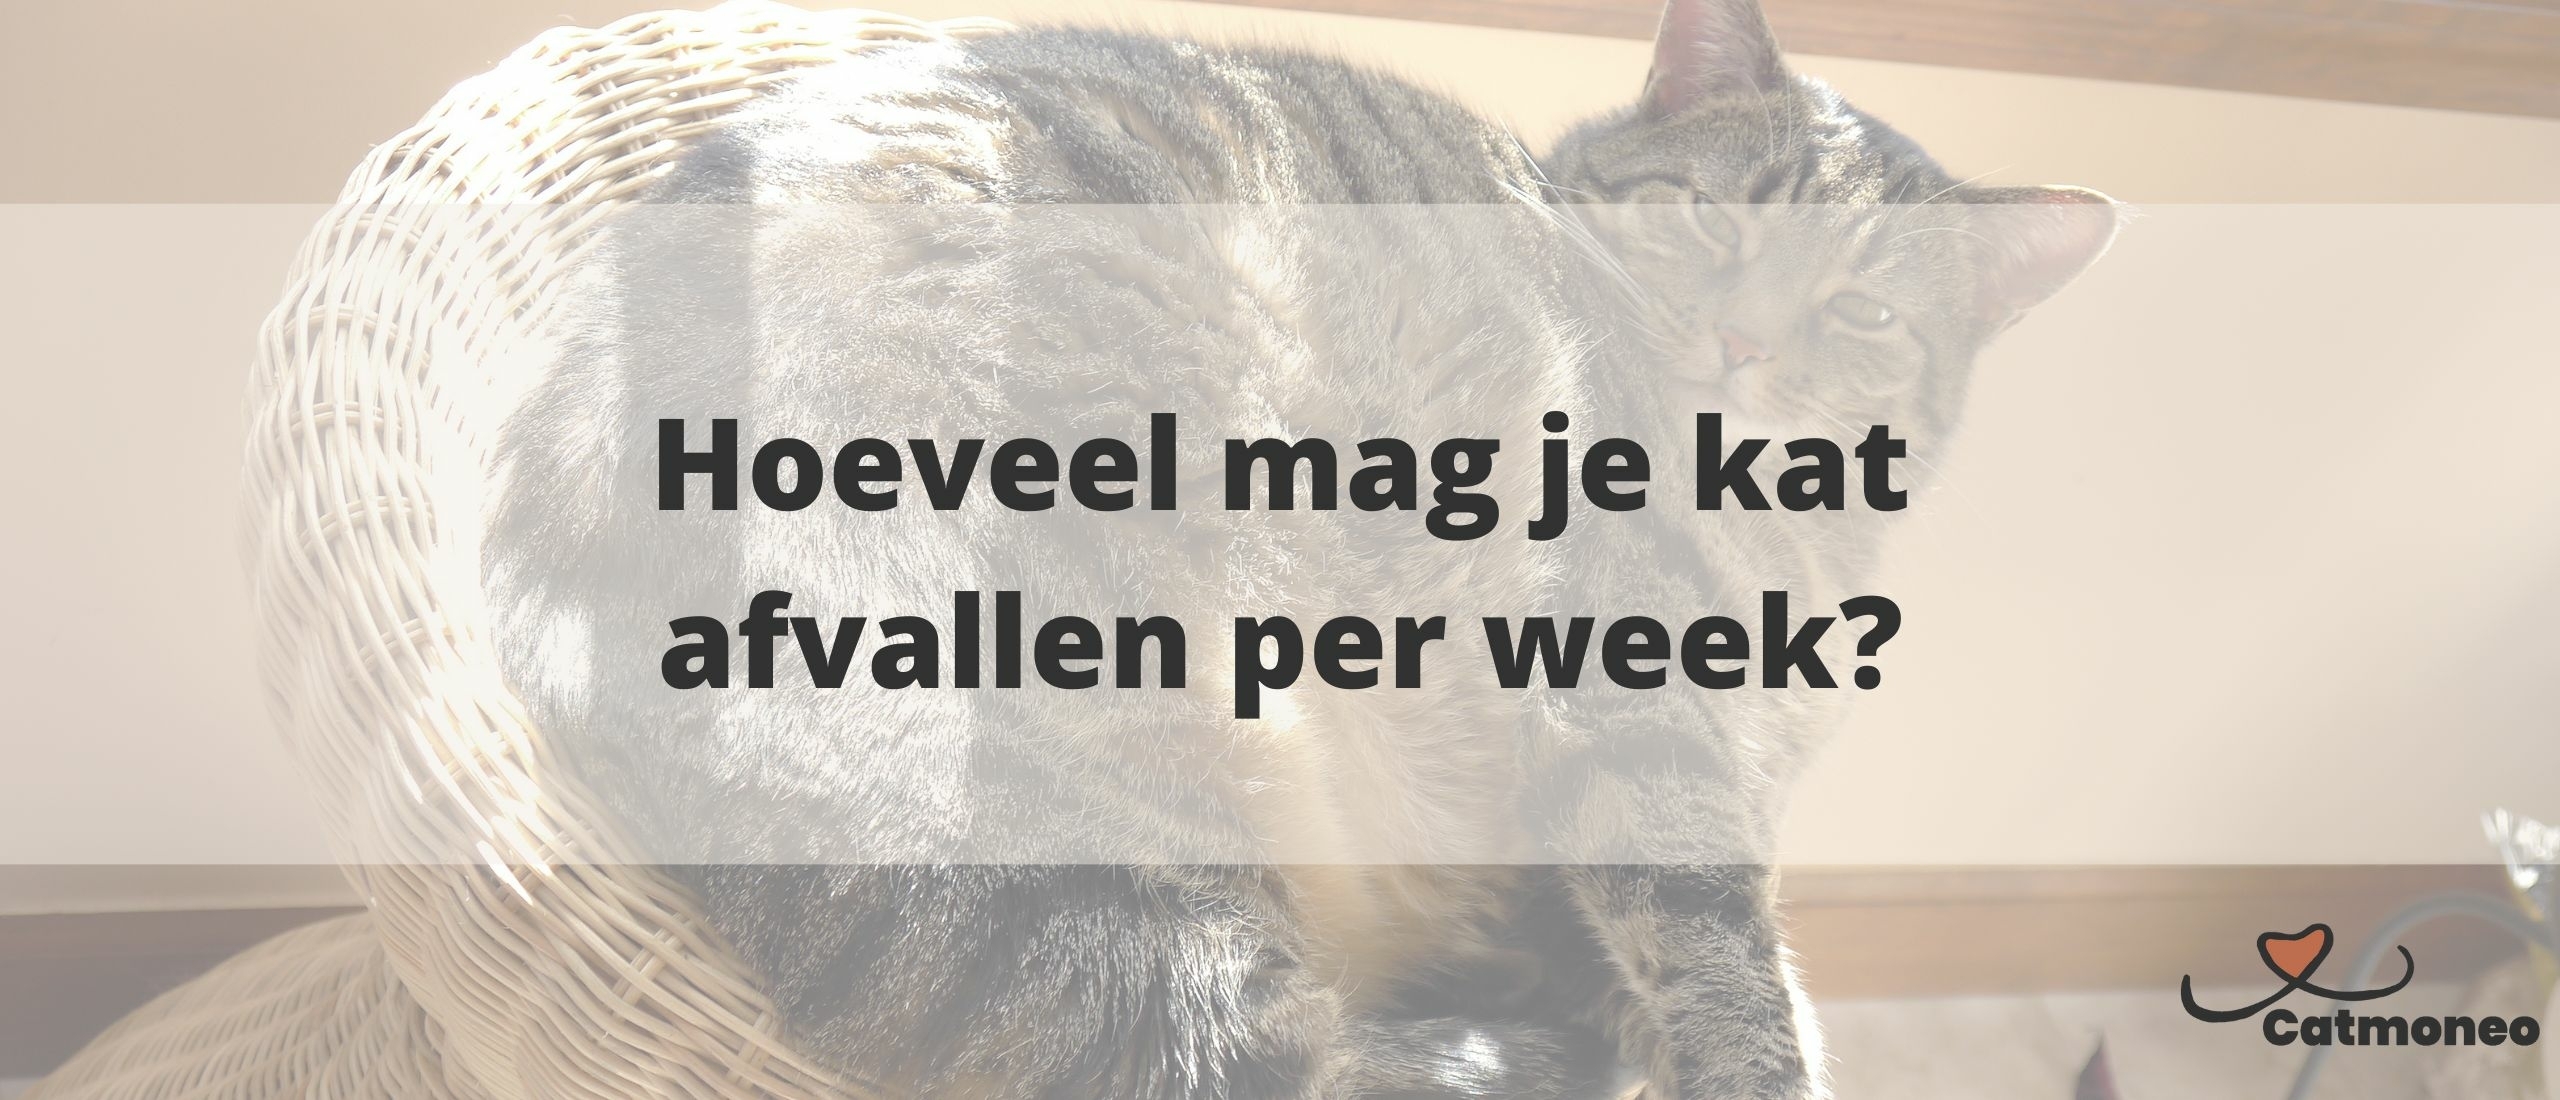 Hoeveel mag je kat afvallen per week